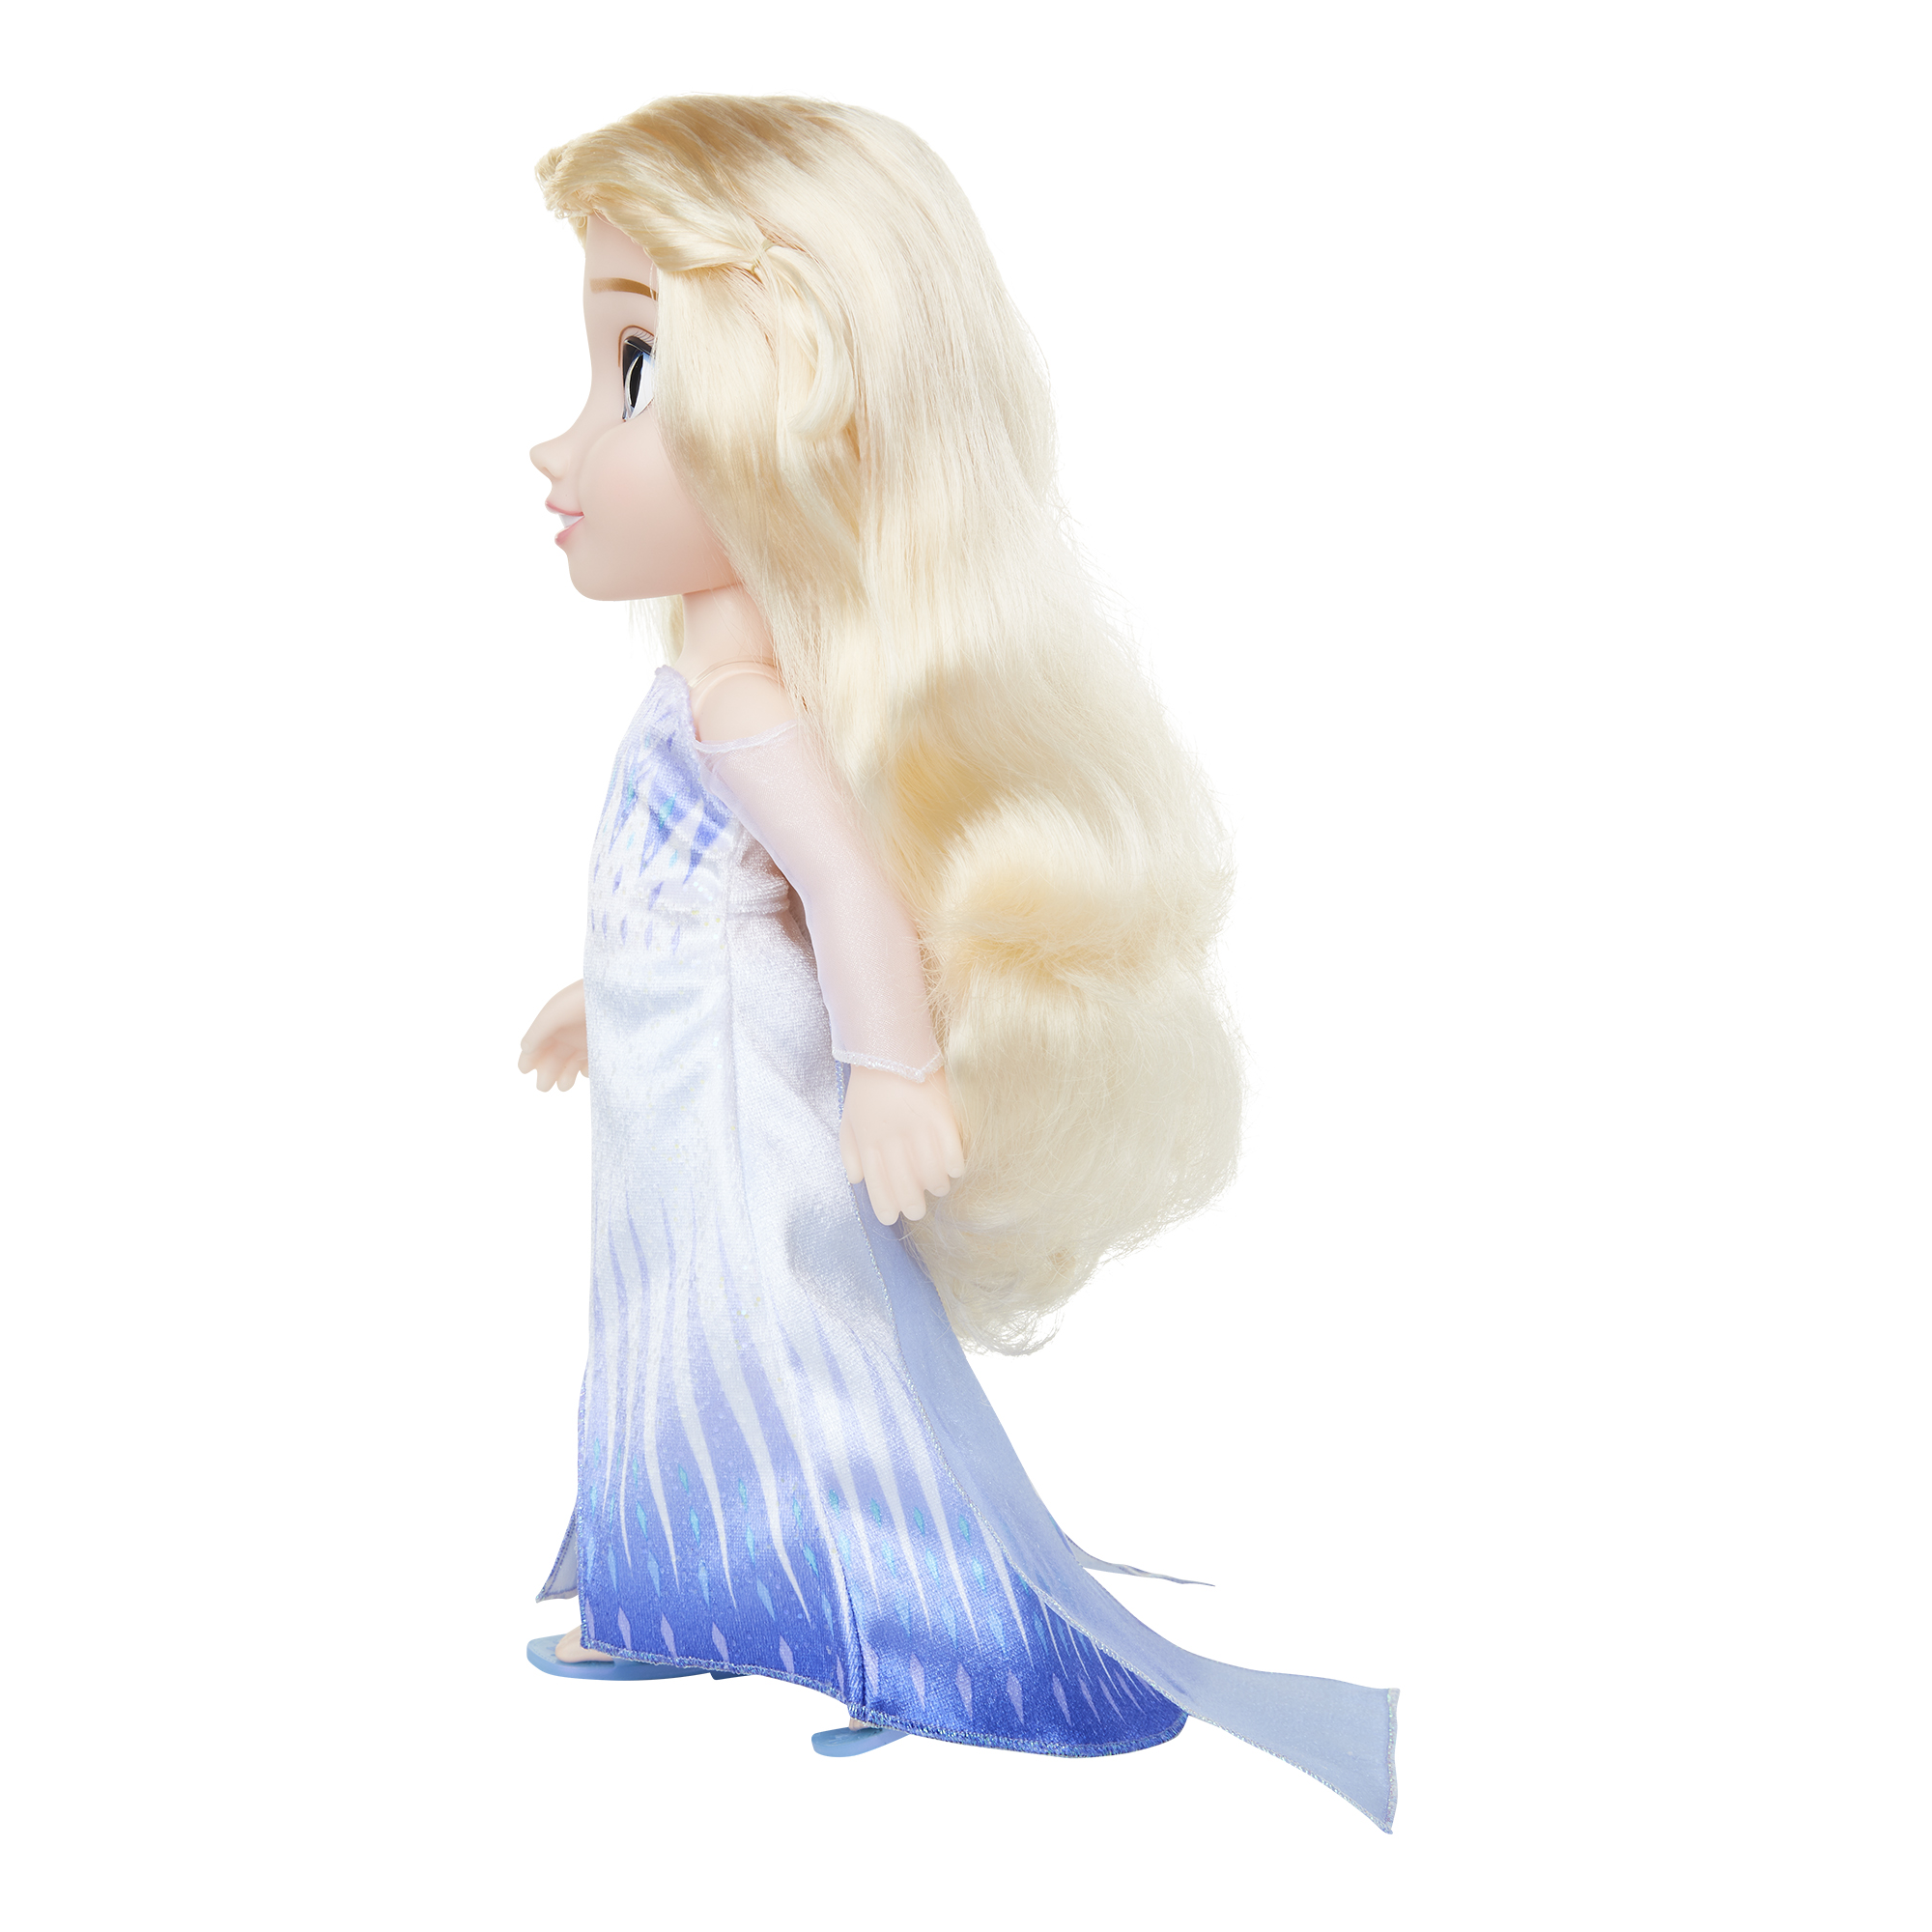 Disney Frozen 2 Elsa the Snow Queen 14" Doll - image 5 of 11